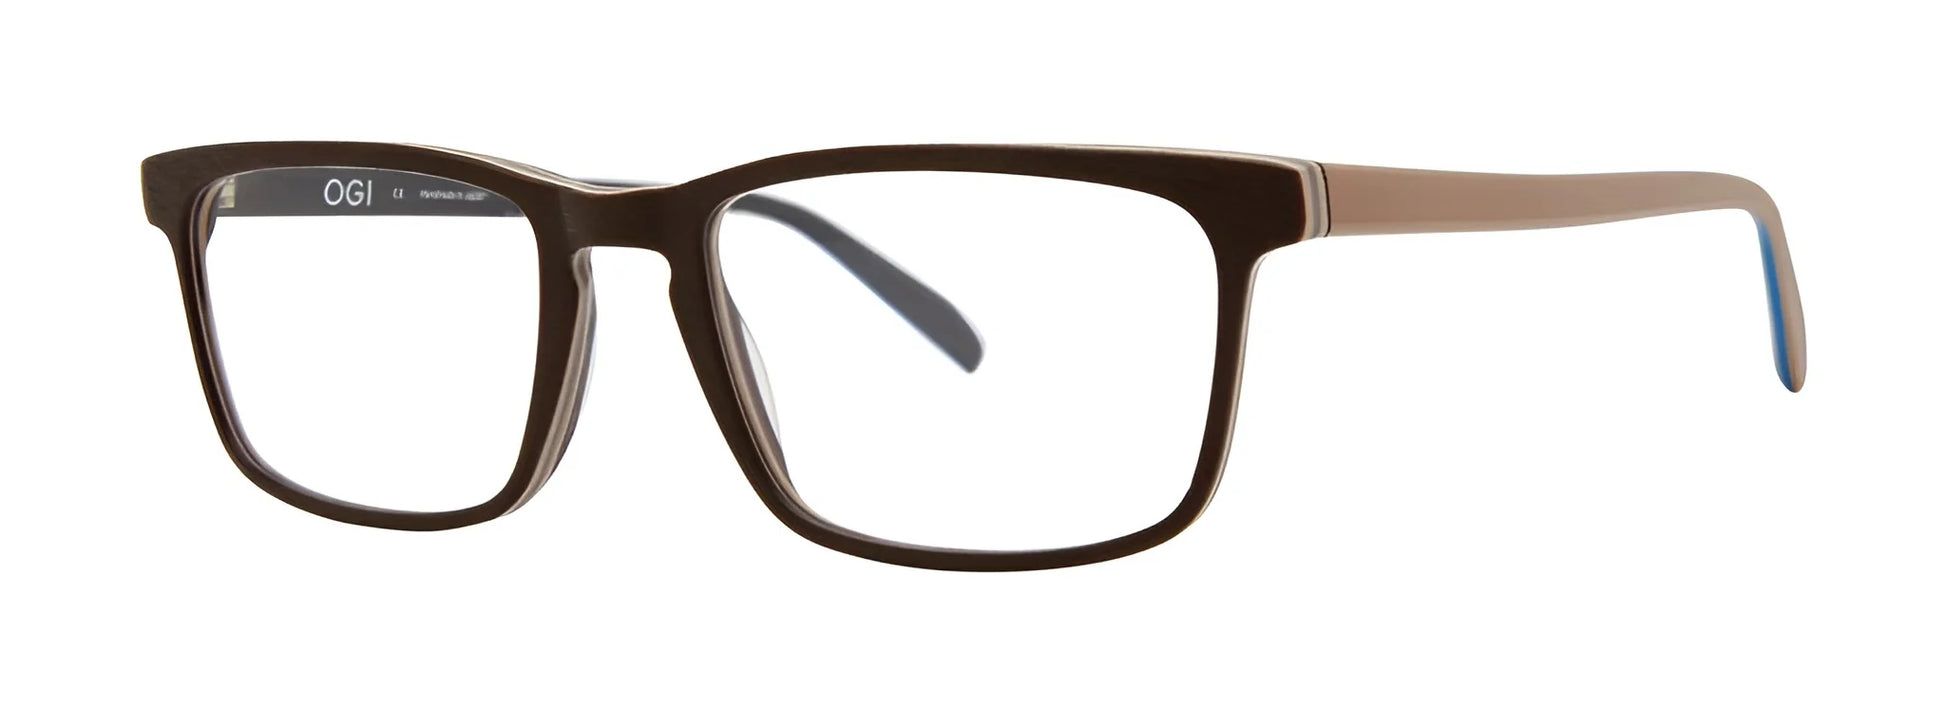 OGI BREEZERS Eyeglasses Brown Wood / Tan